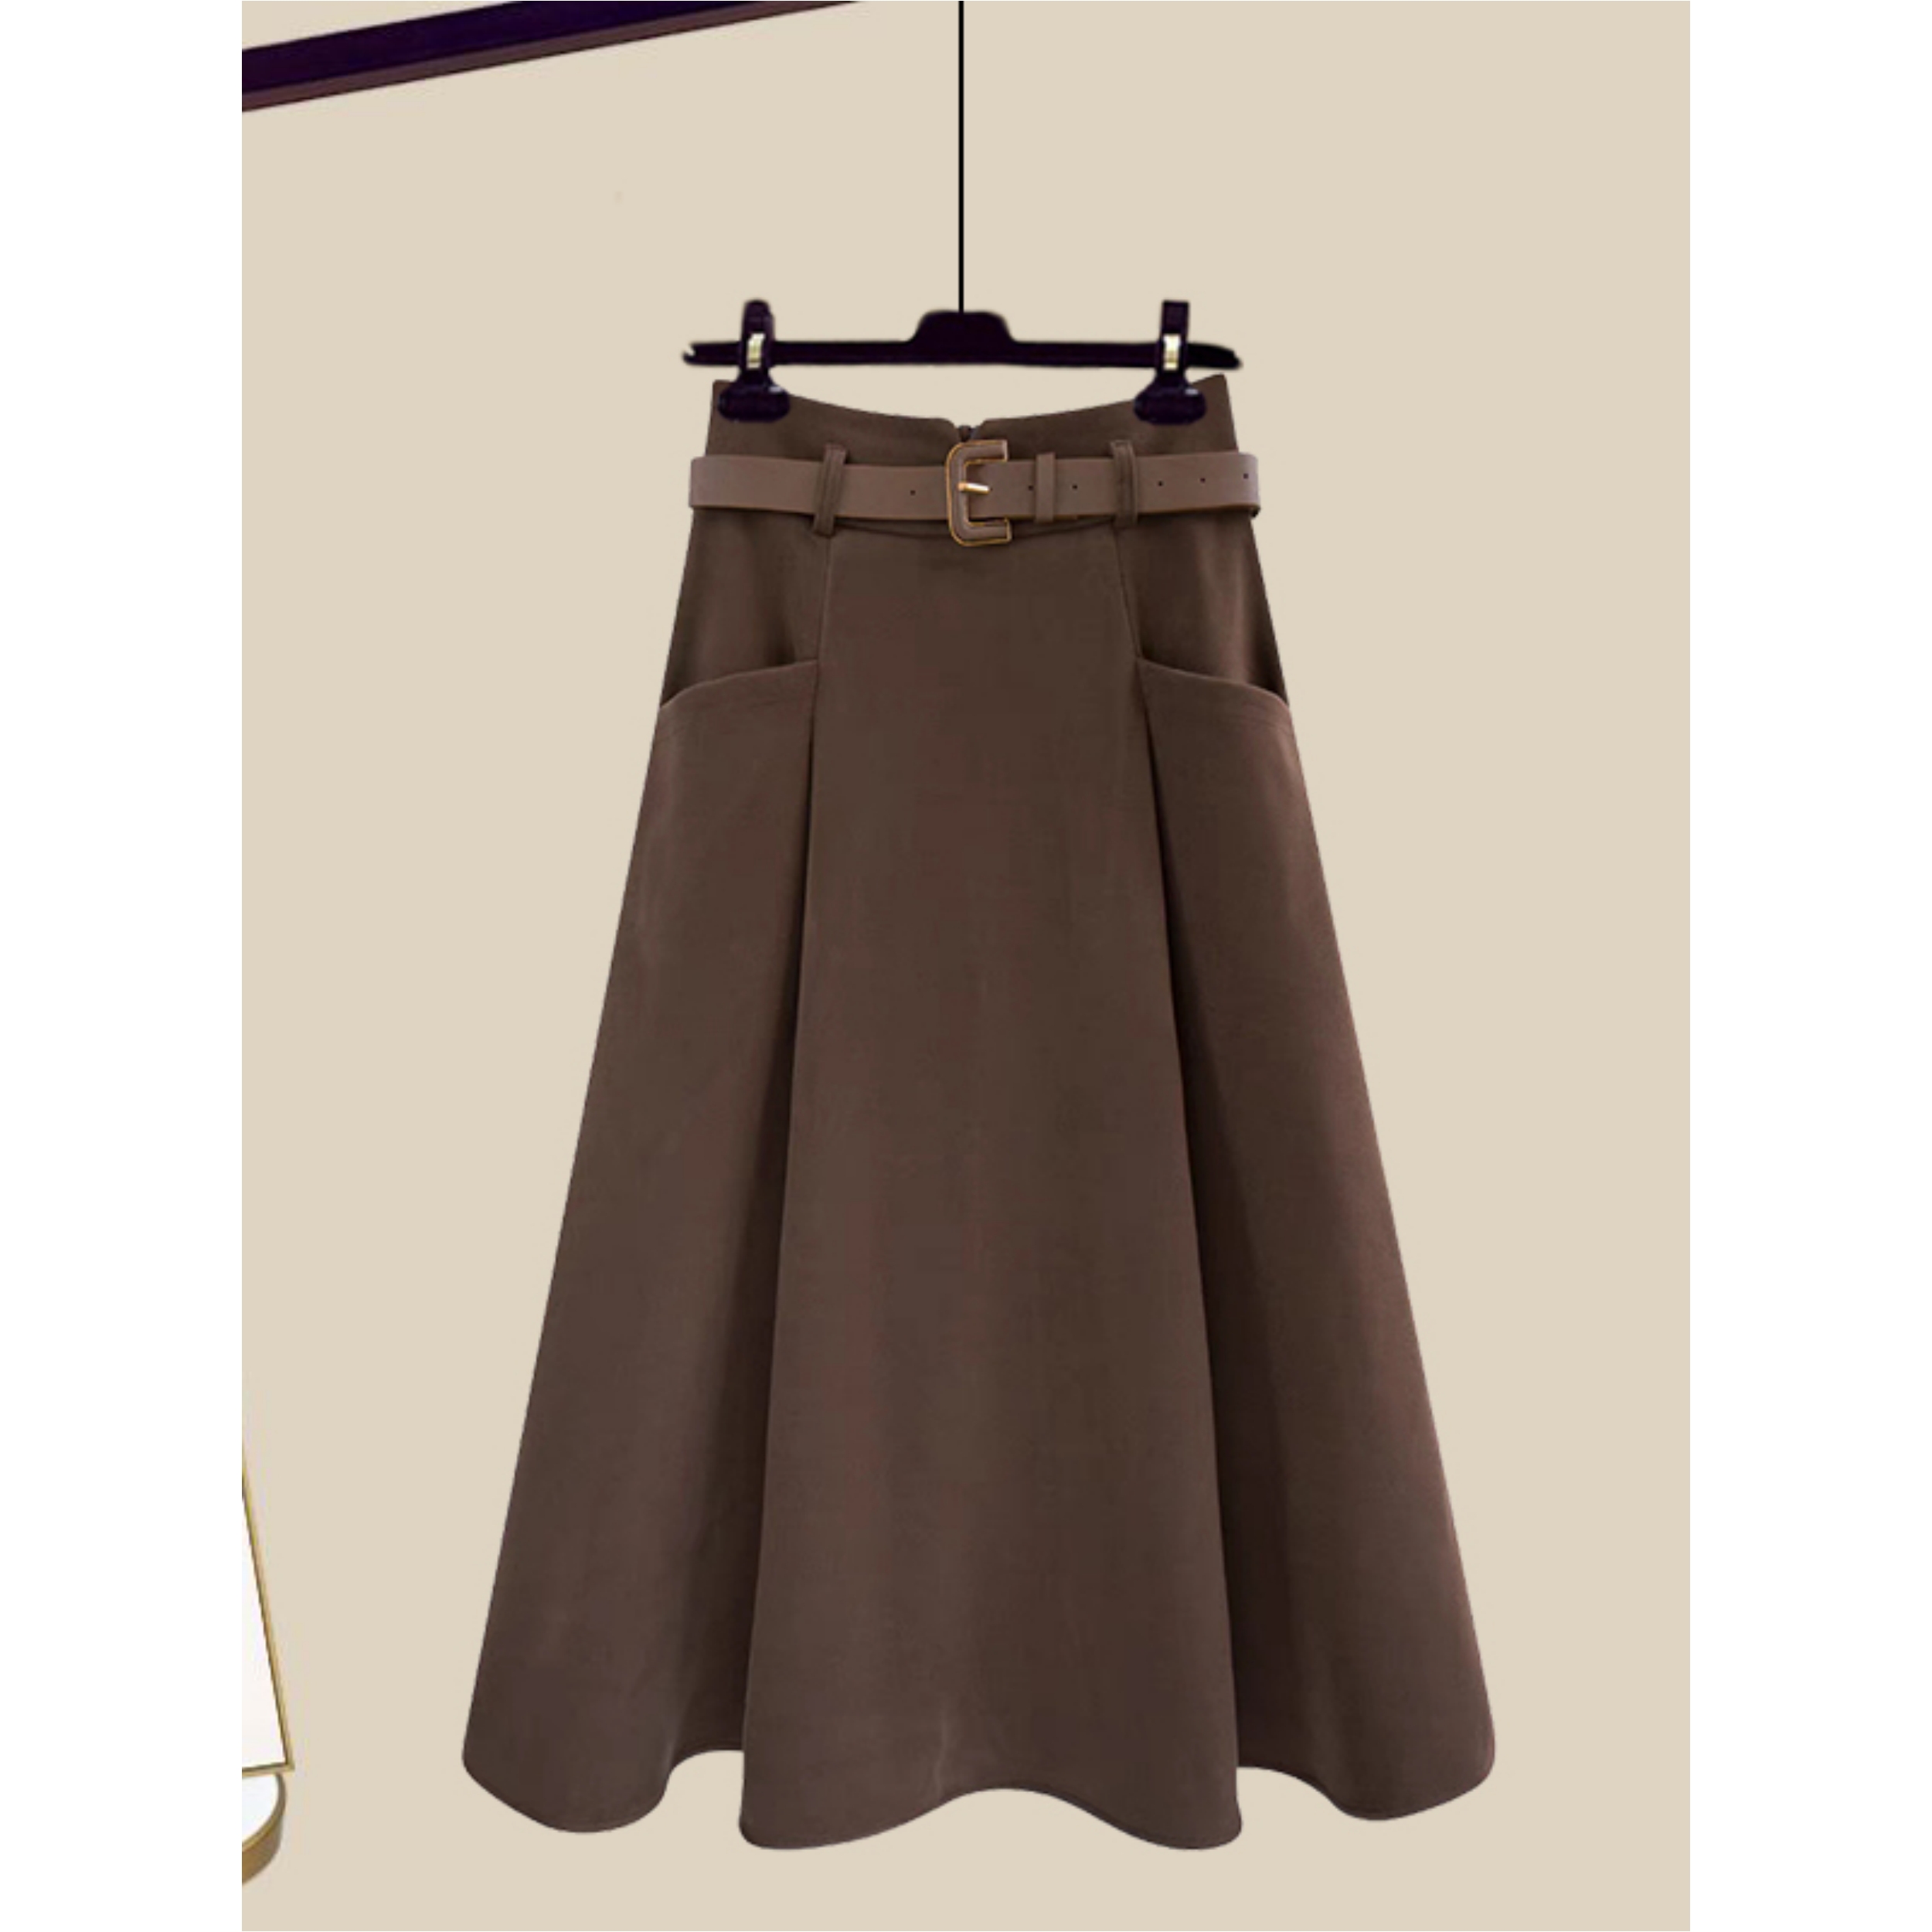 a-line long skirt